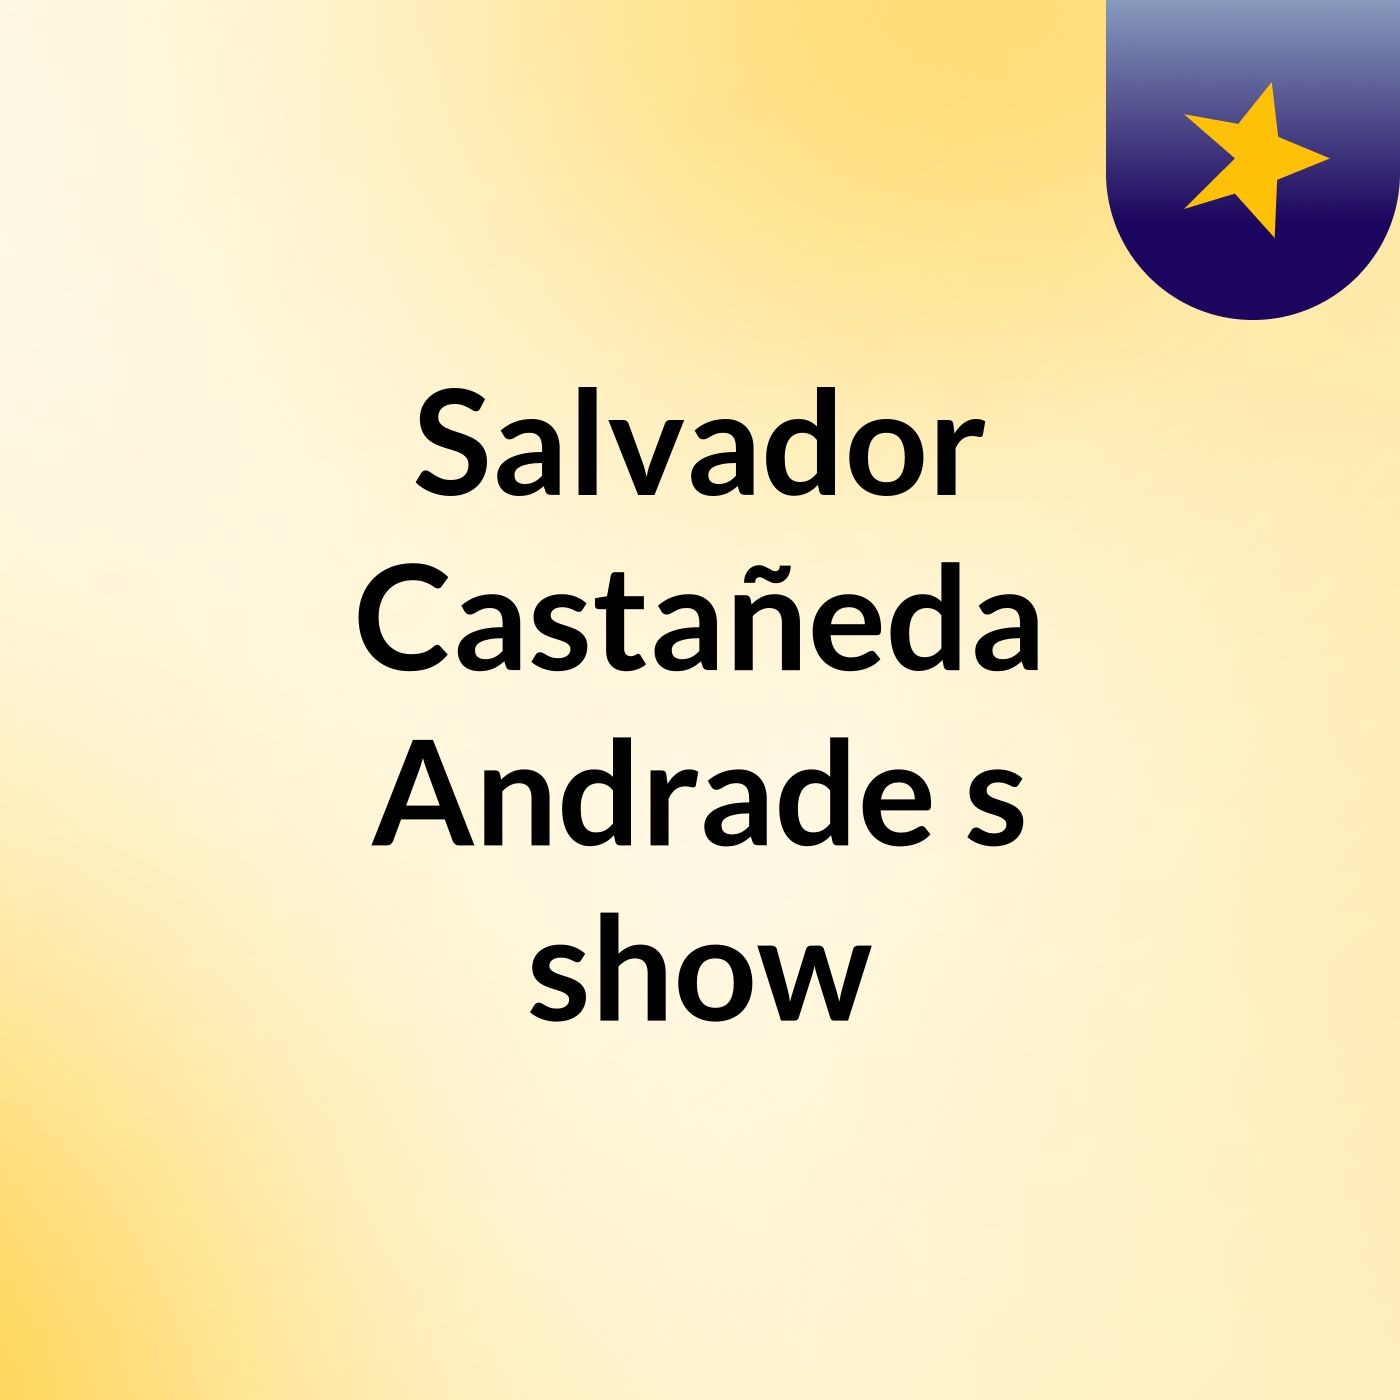 Salvador Castañeda Andrade's show